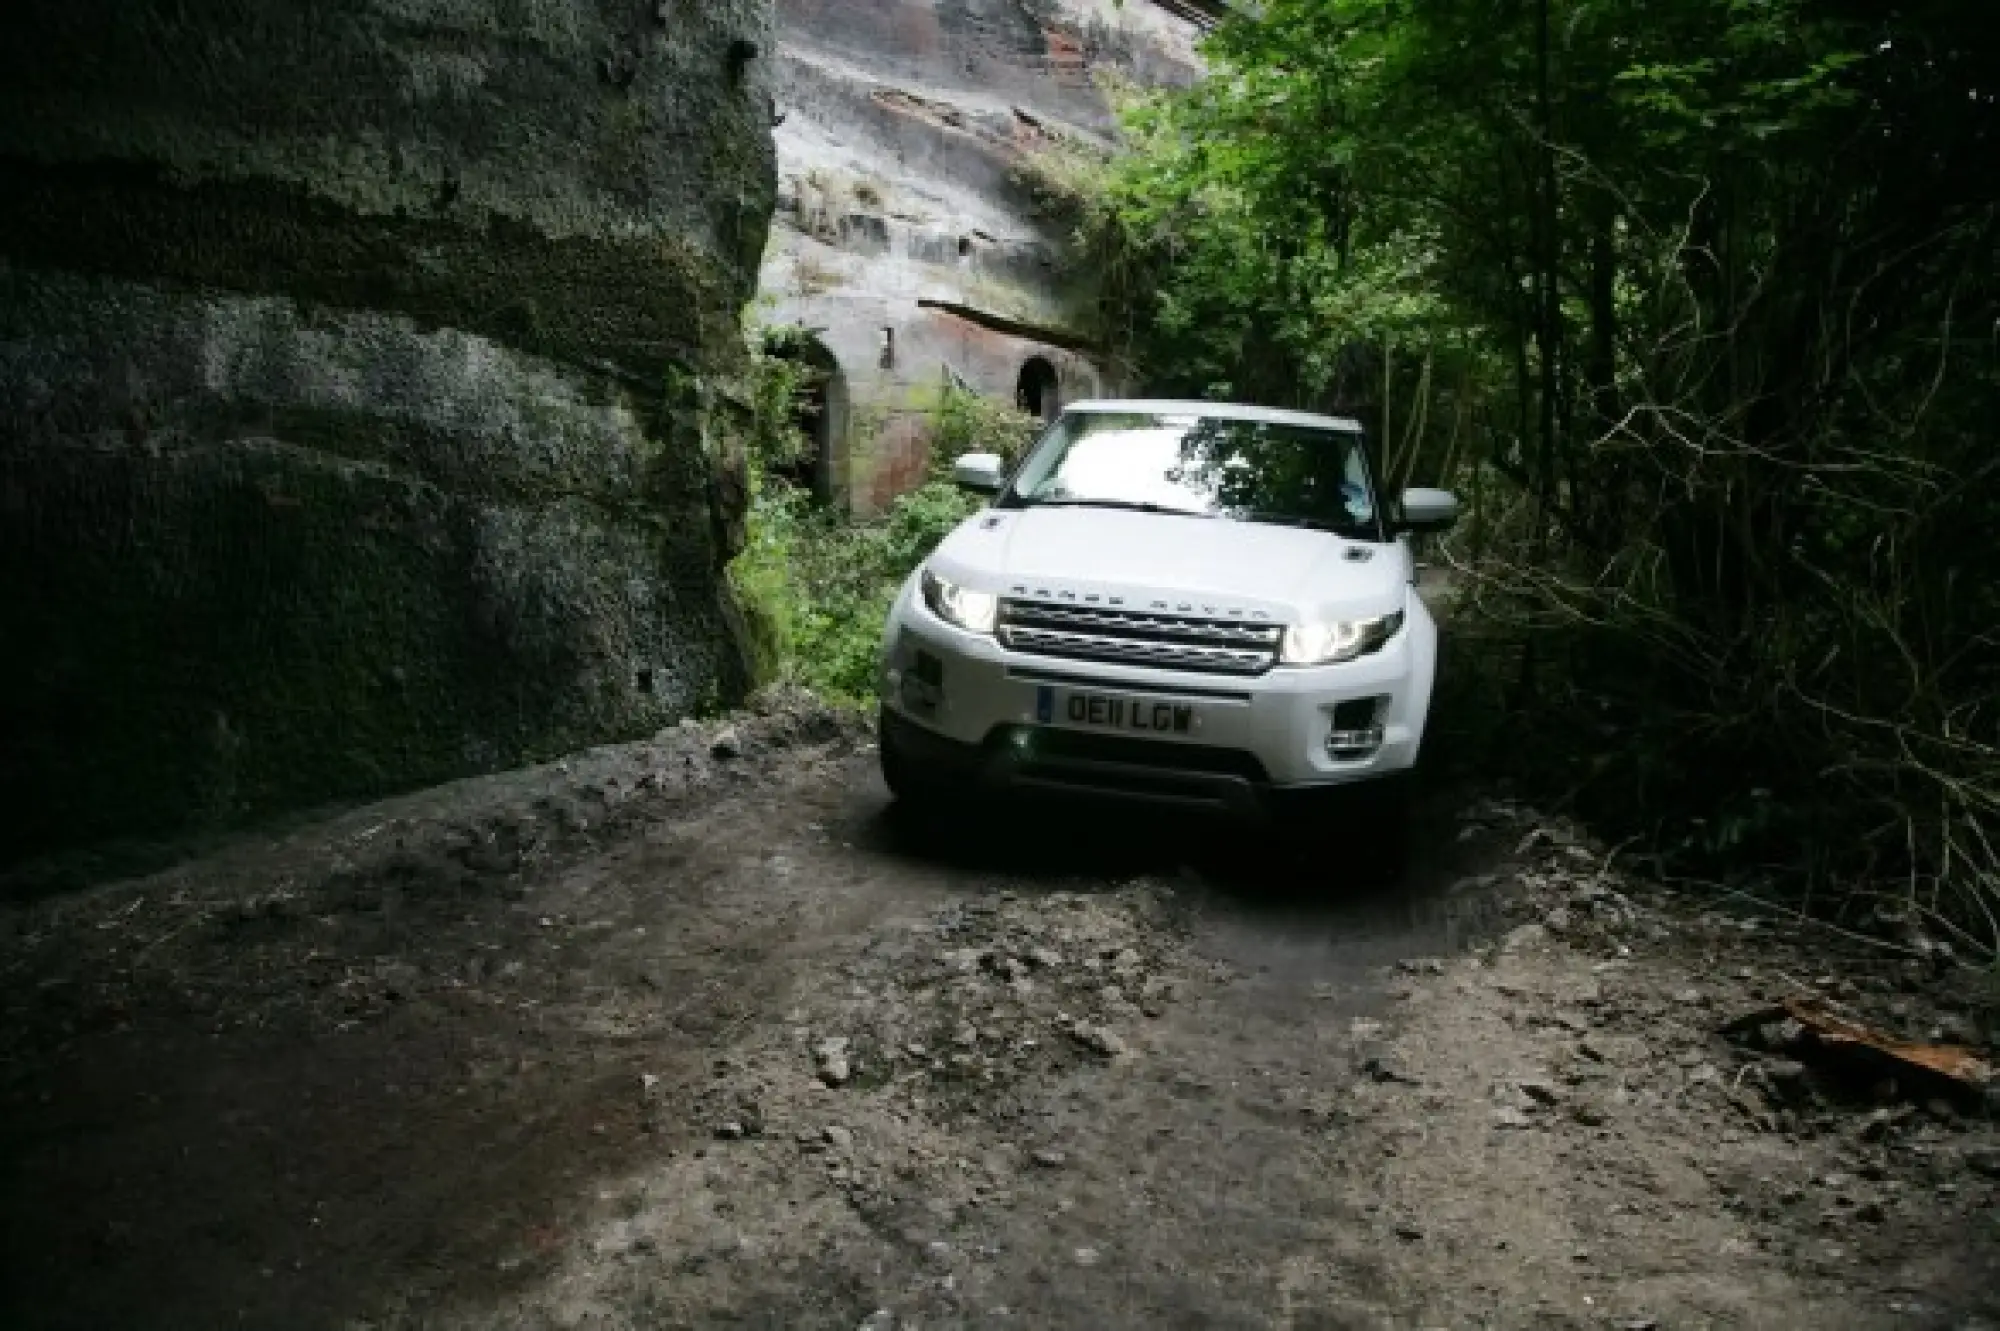 Land Rover Range Rover Evoque nuove foto ufficiali - 170